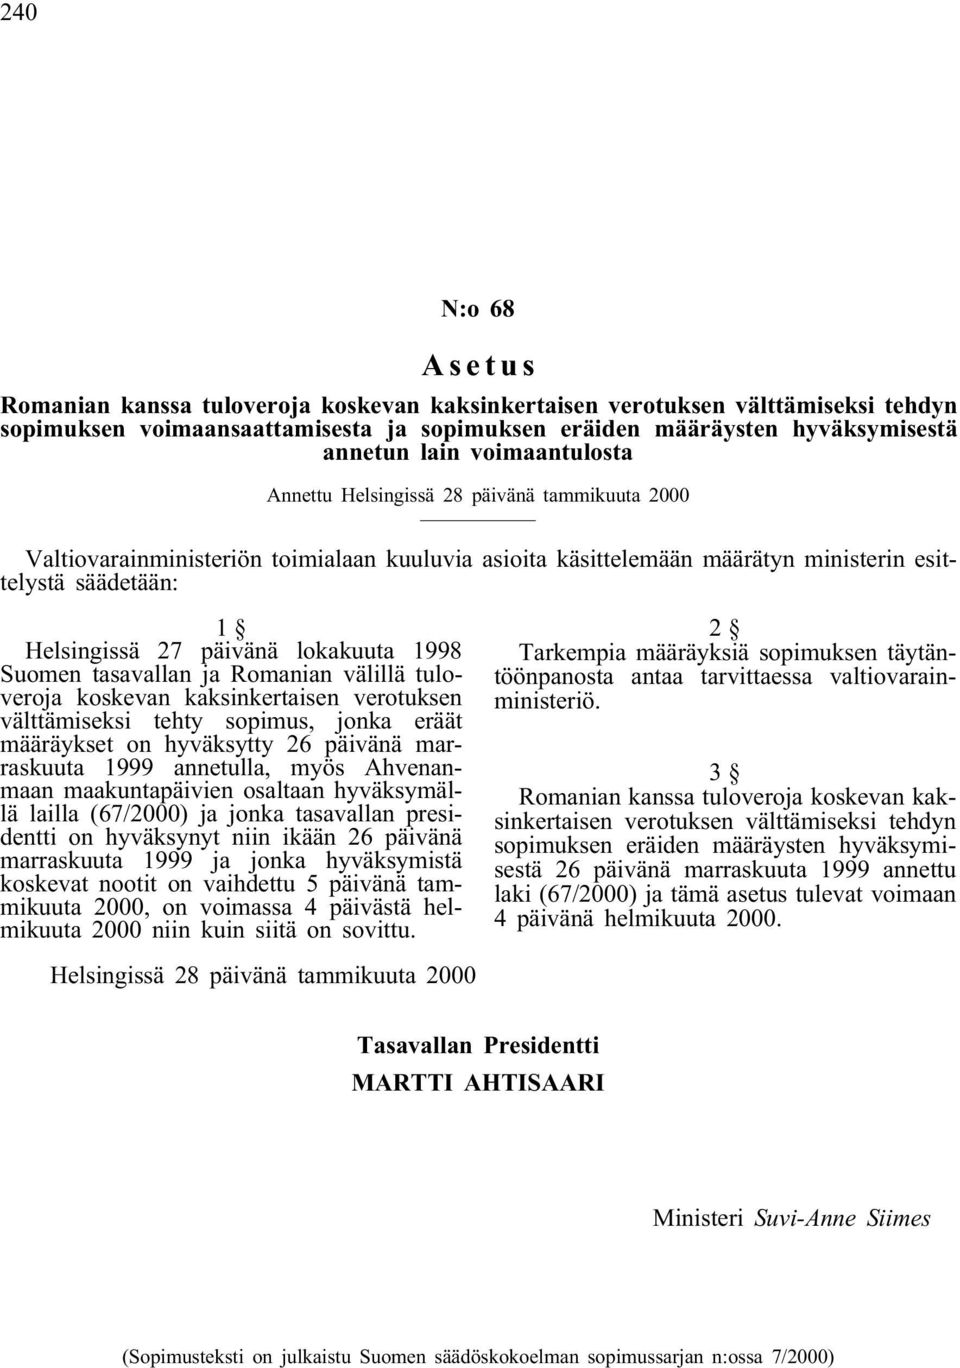 lokakuuta 1998 Suomen tasavallan ja Romanian välillä tuloveroja koskevan kaksinkertaisen verotuksen välttämiseksi tehty sopimus, jonka eräät määräykset on hyväksytty 26 päivänä marraskuuta 1999